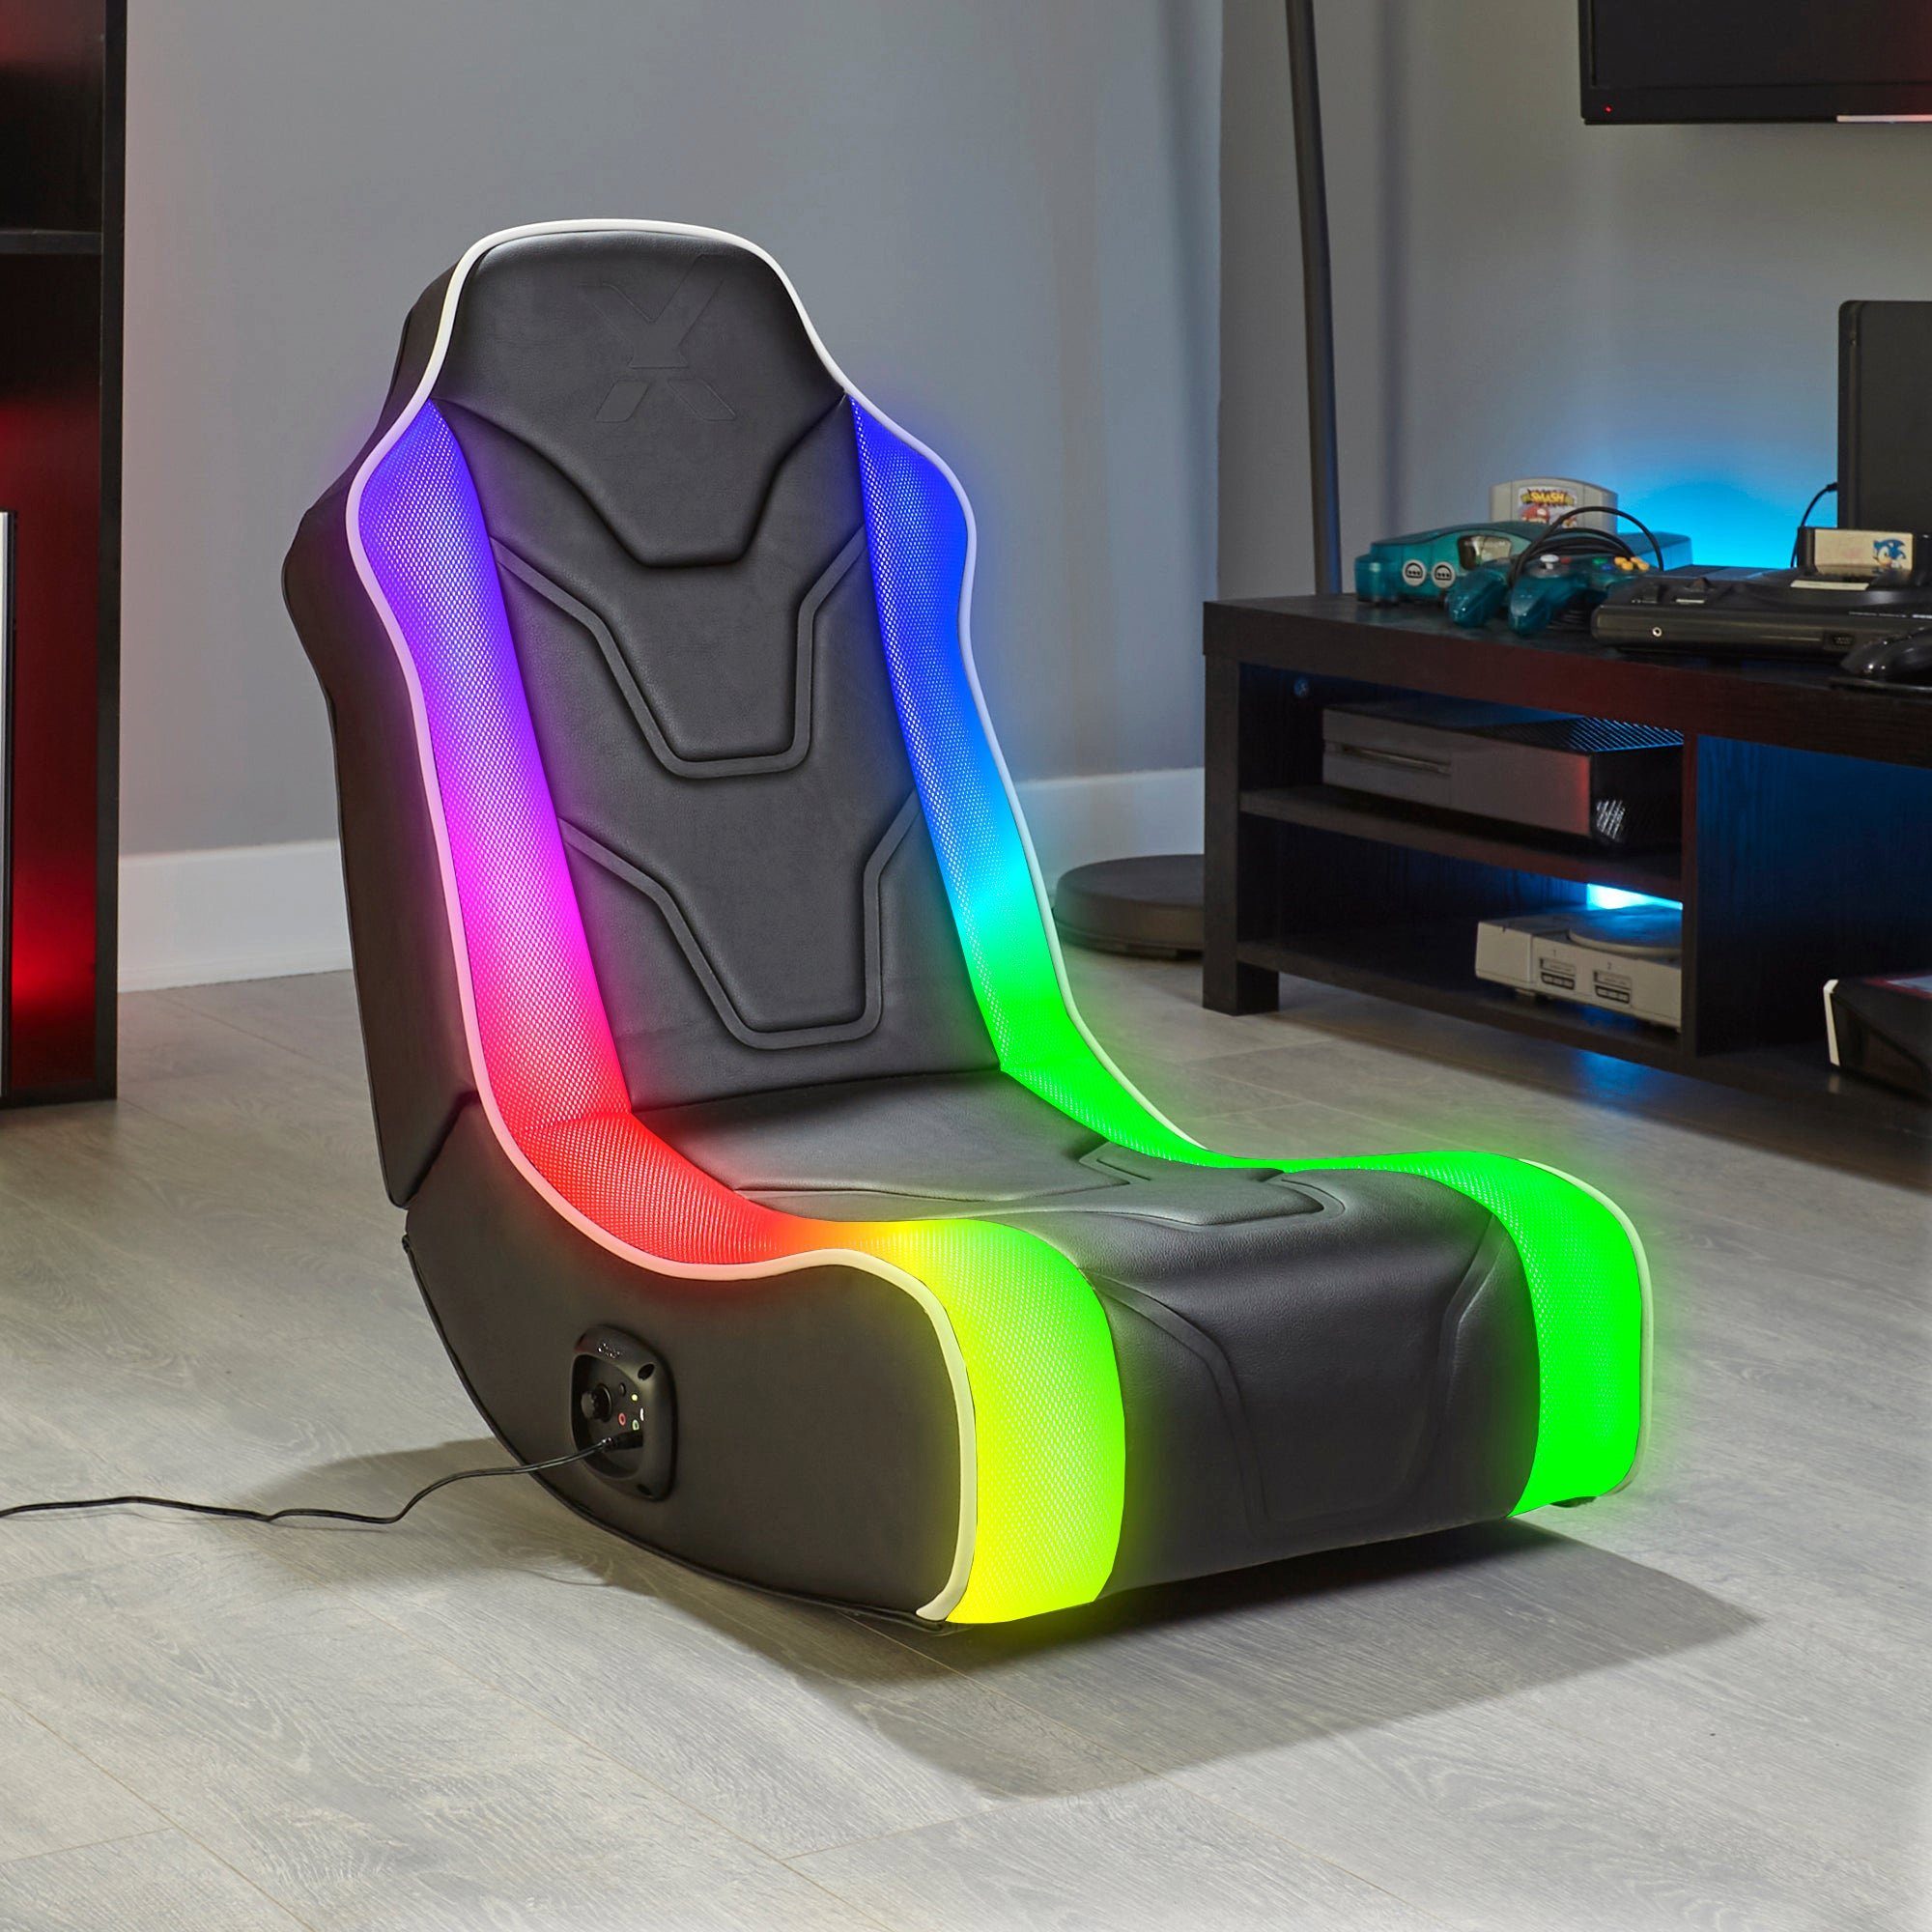 X Rocker Kindersessel Chimera RGB 2.0 Gaming Sessel mit 2.0 Audiosystem & Beleuchtung, für Kinder, für Jugendliche, für Teenager